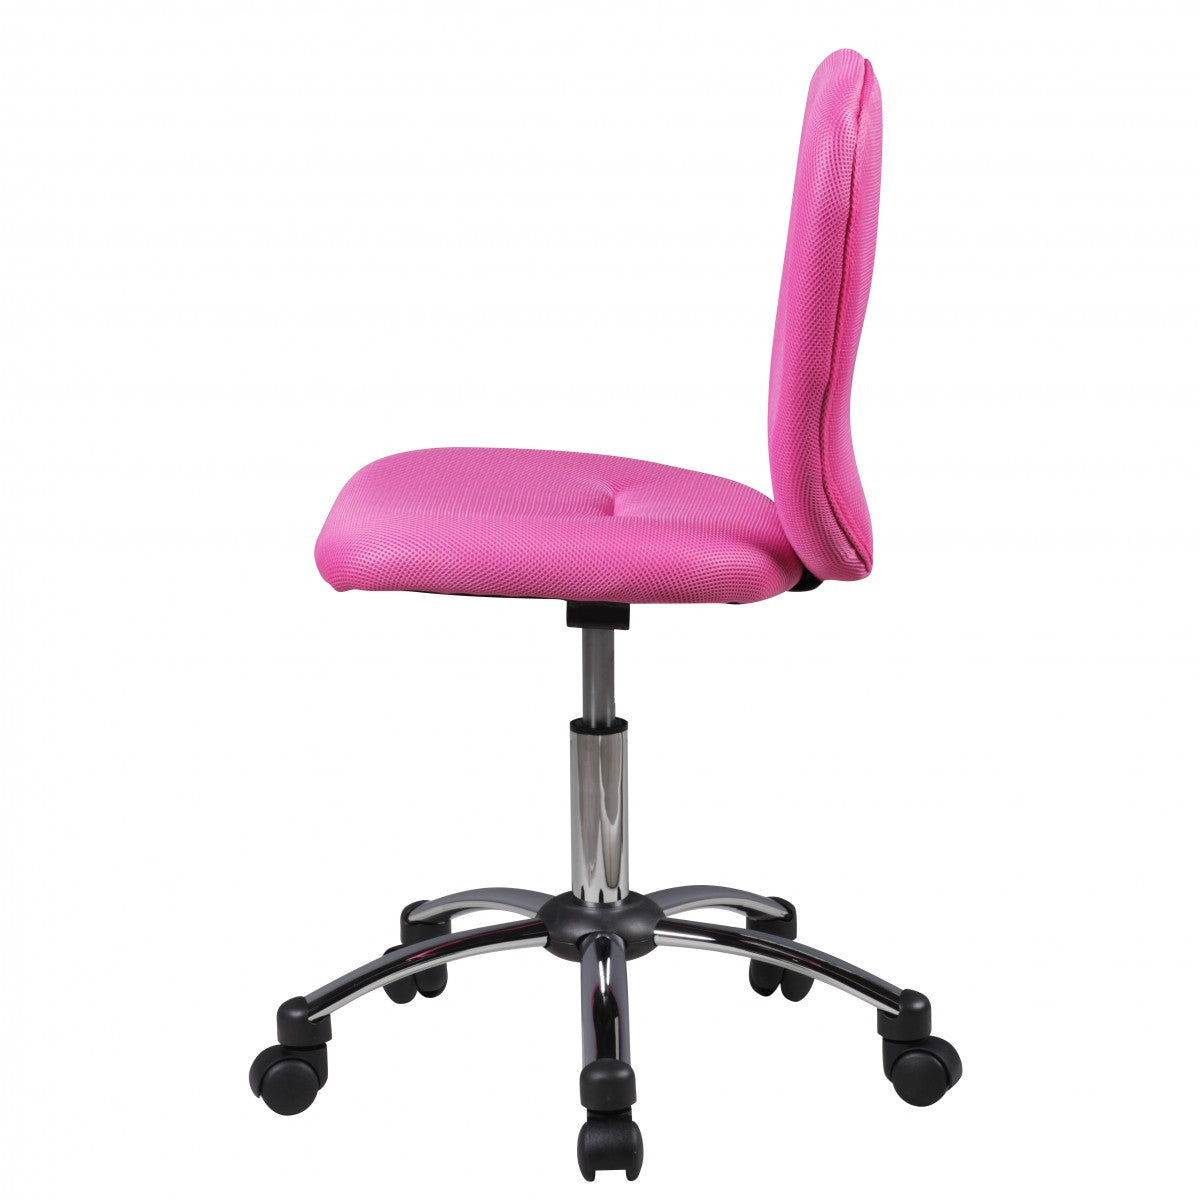 Nancy's Topeka Bureaustoel voor Kinderen - Draaistoel - Bureaustoel - Kinderstoel - Verstelbaar - Zwart/Groen/Blauw/Roze